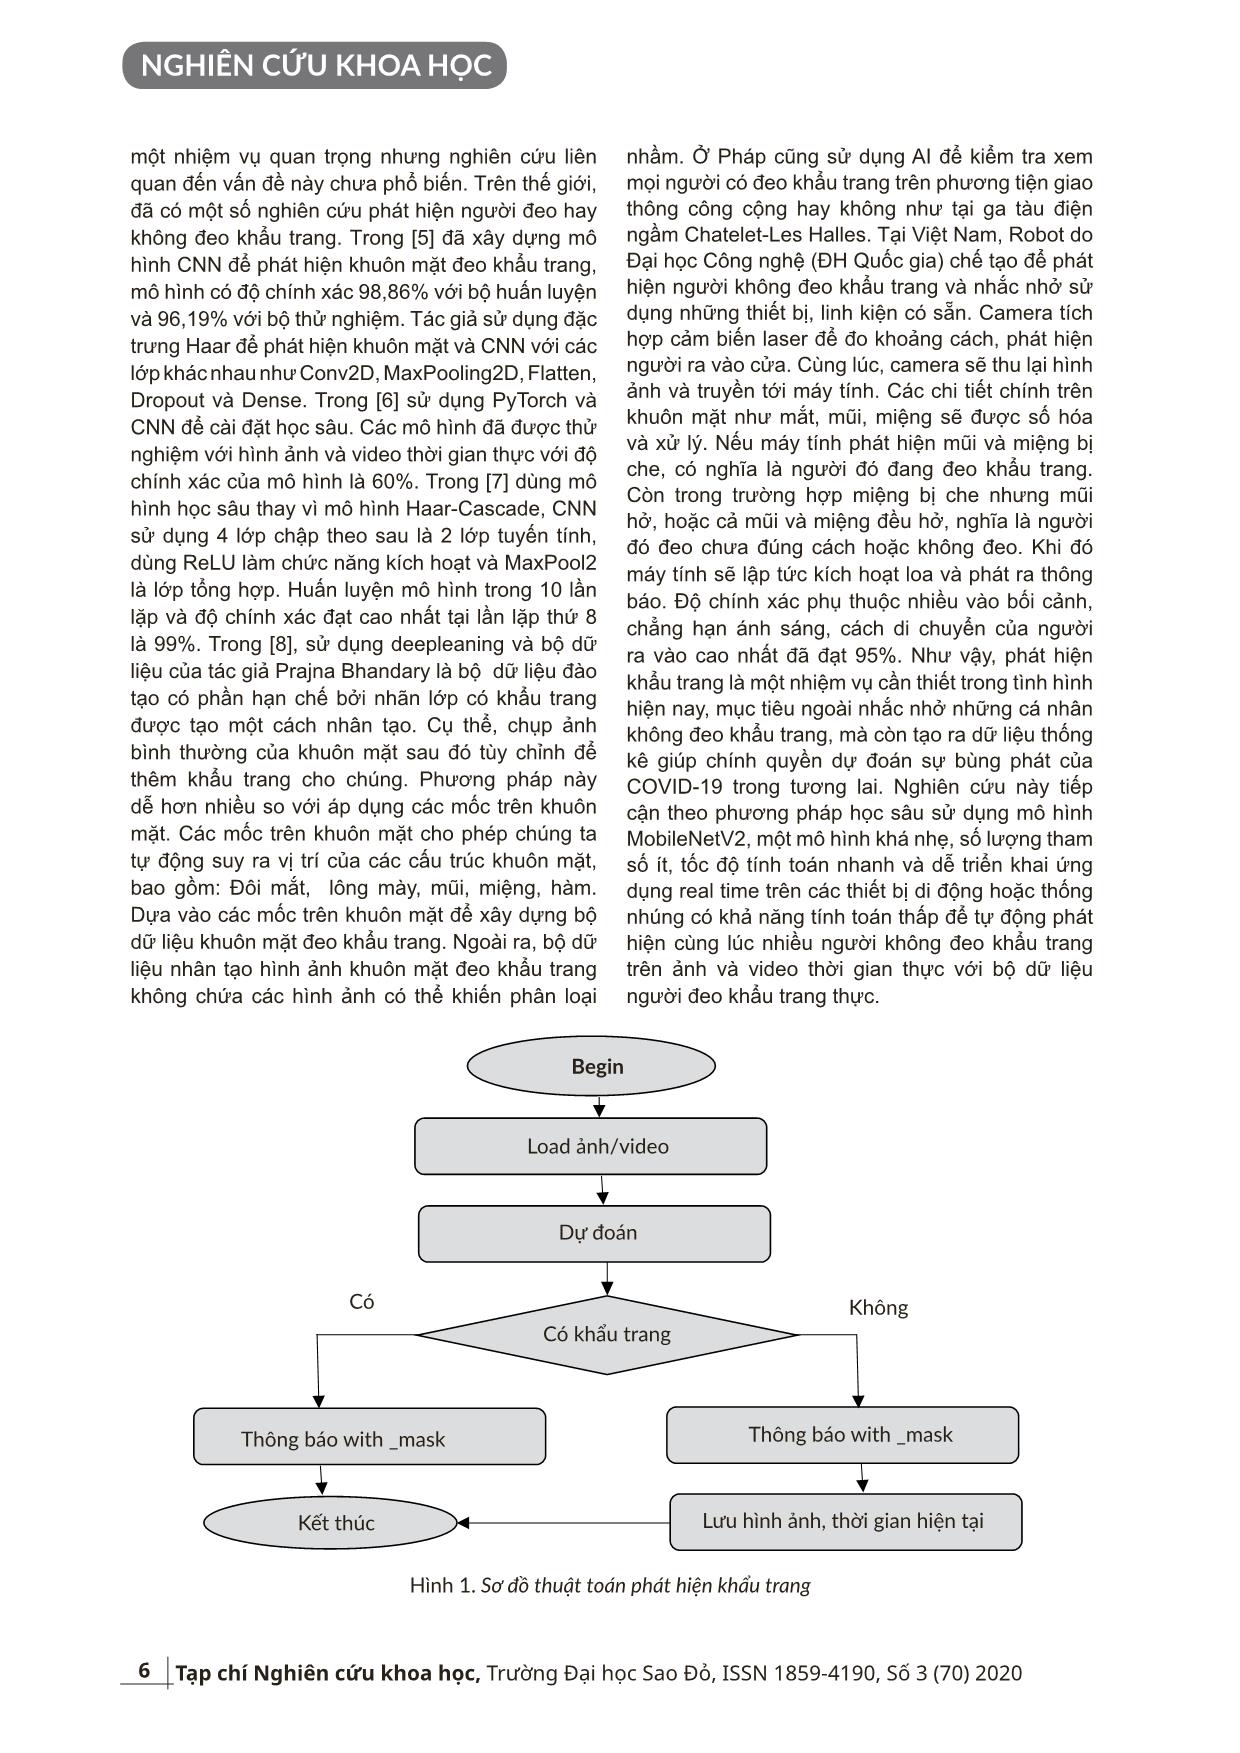 Phát hiện khẩu trang sử dụng mô hình học sâu MobileNetV2 trang 2